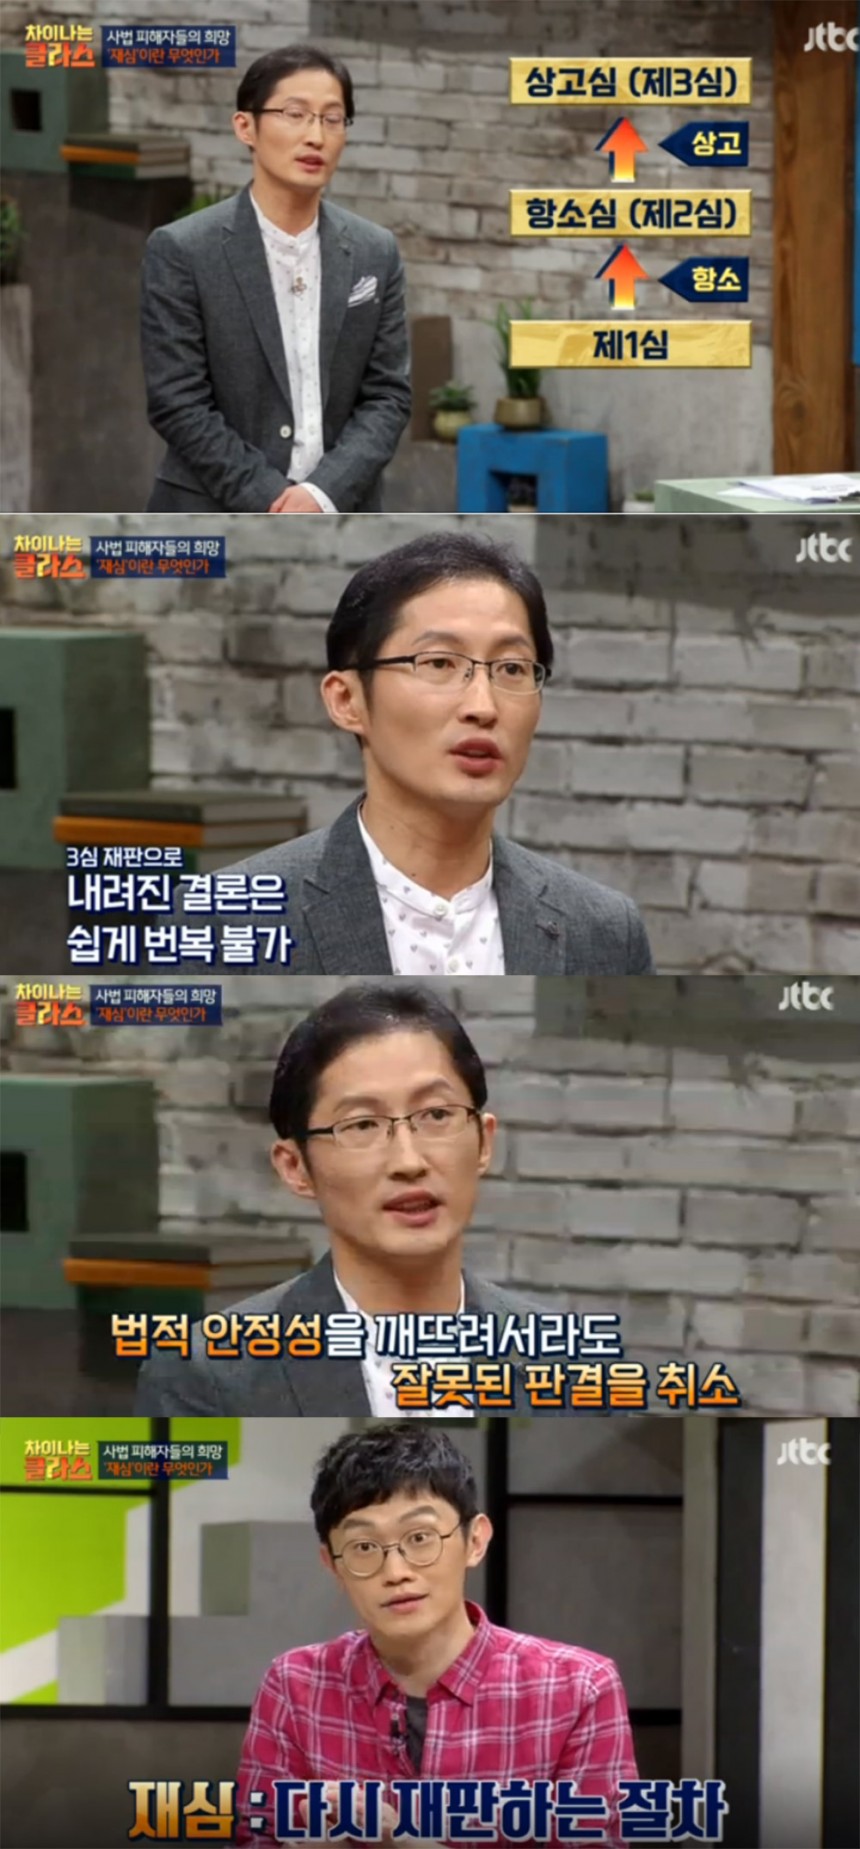 ‘차이나는 클라스’ 방송 화면 / JTBC ‘차이나는 클라스’ 방송 캡처